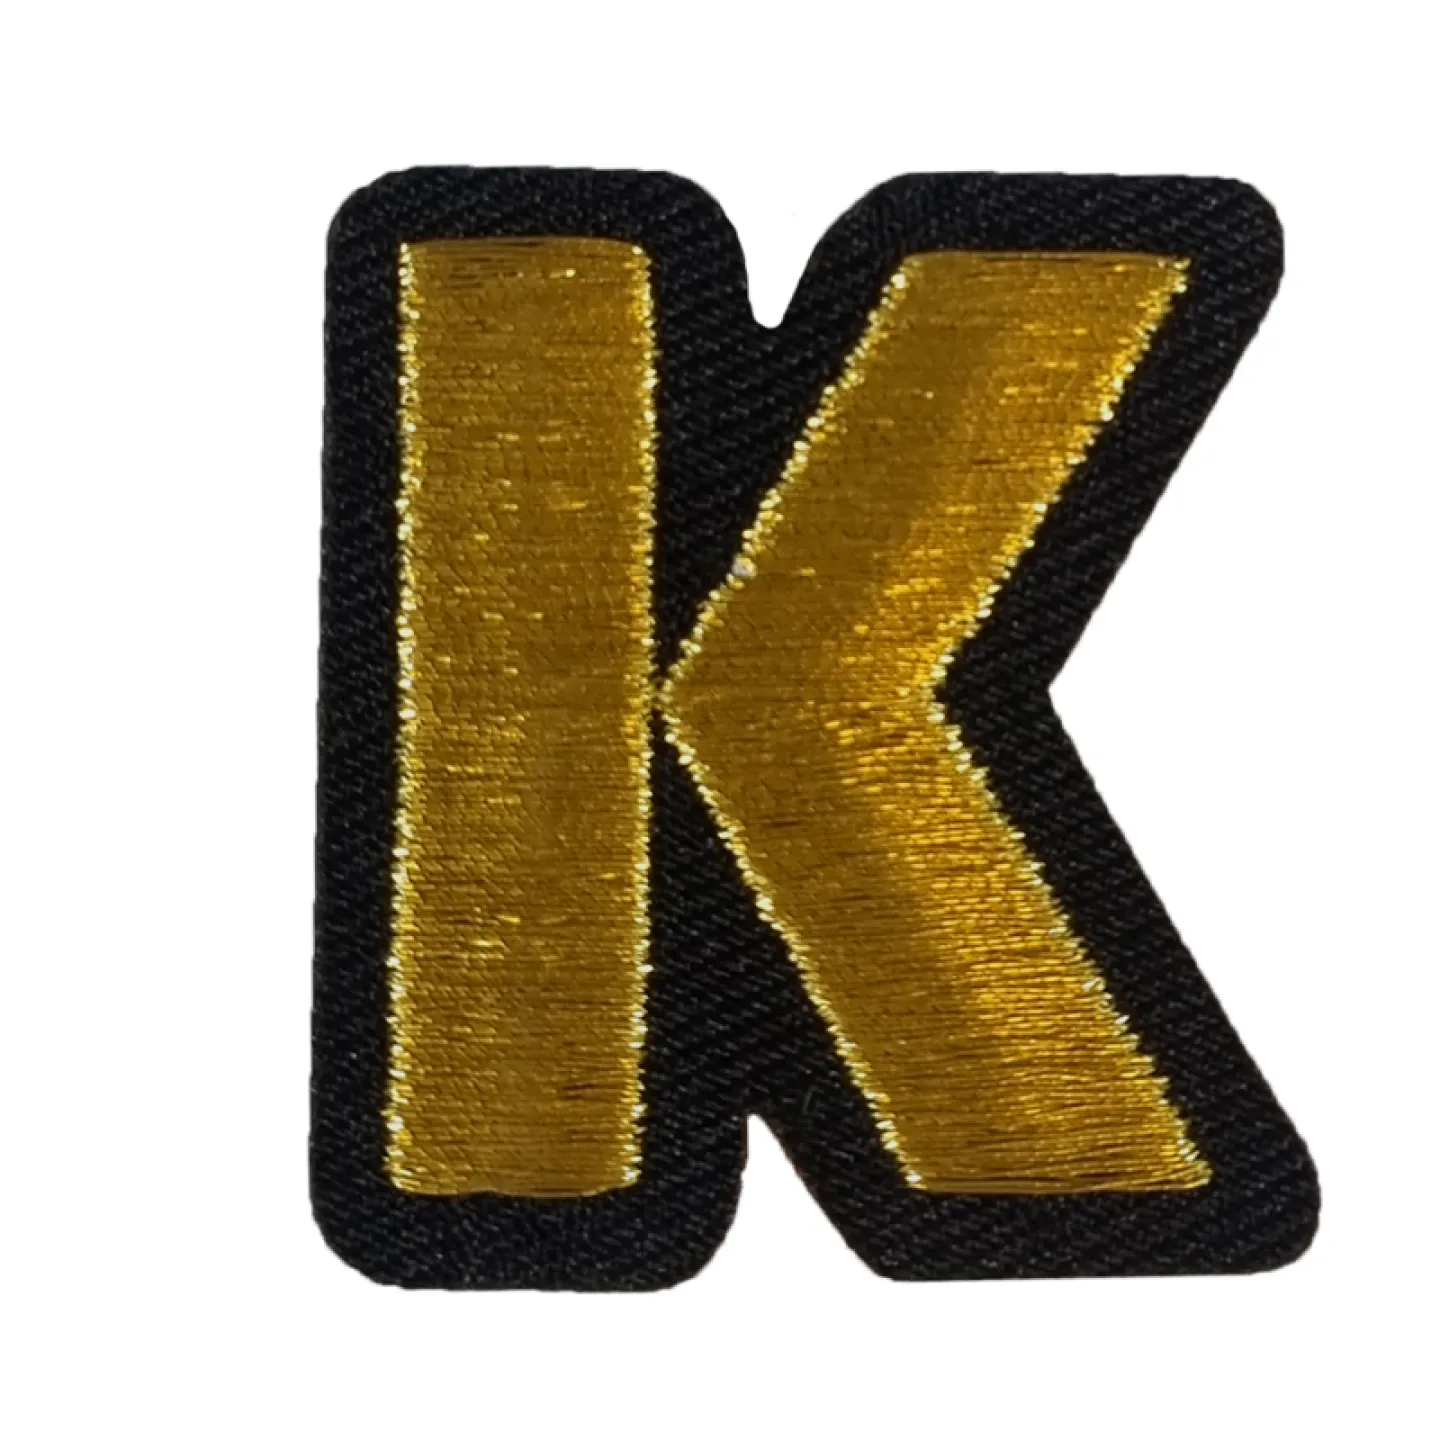 Oeteldonk embleem Gouden letter K.